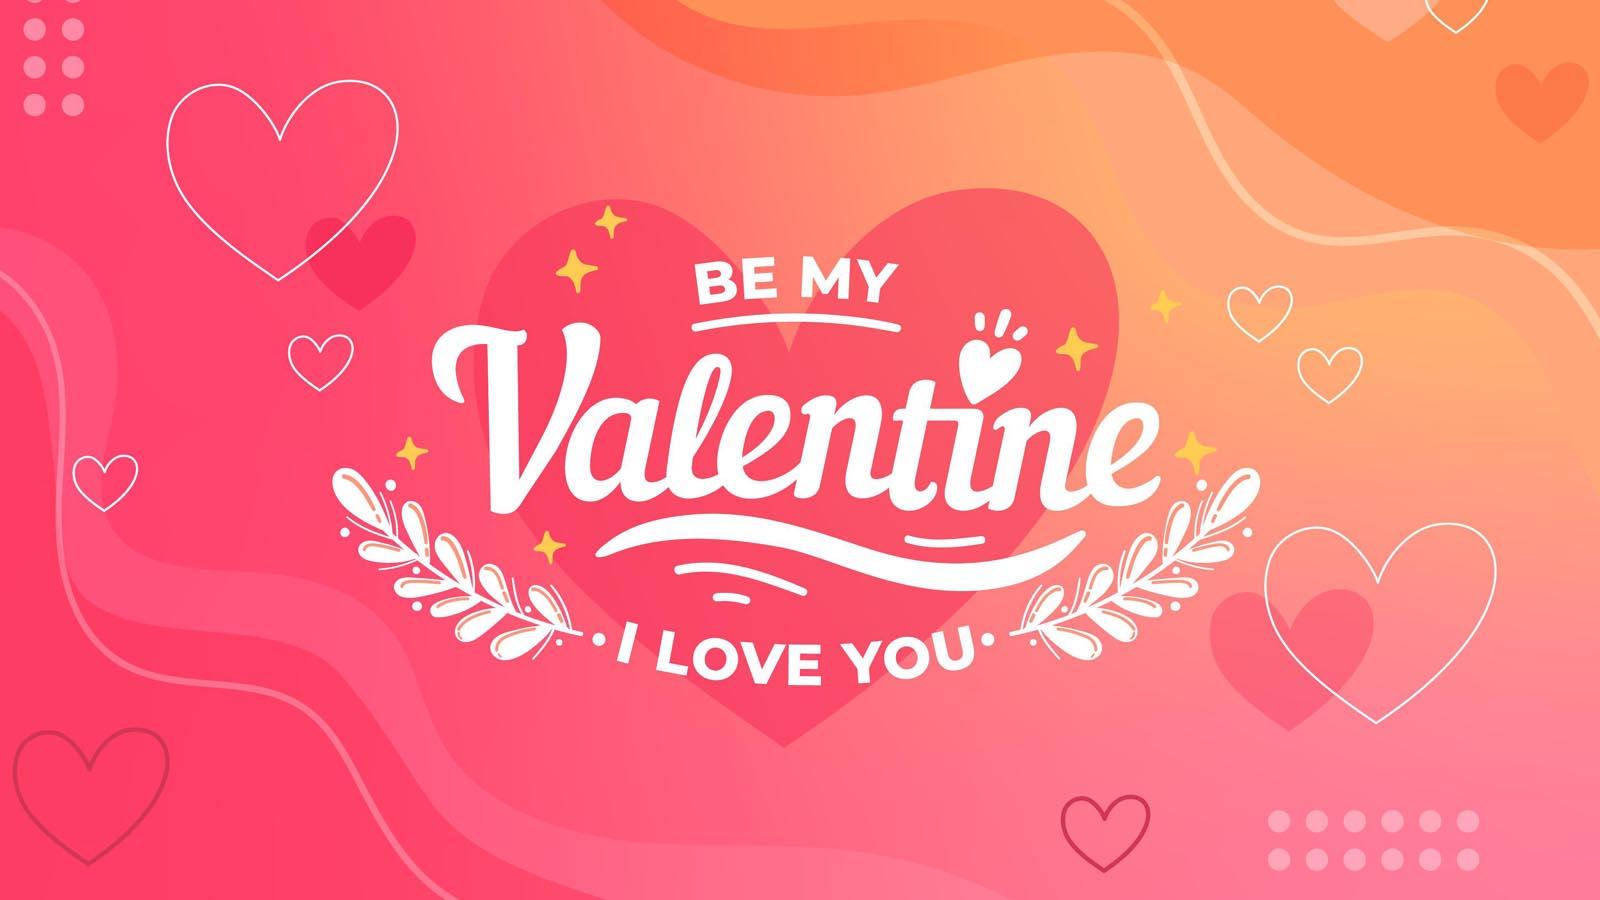 Valentine's Day पर अपने बॉयफ्रेंड, गर्लफ्रेंड, वाइफ और हसबैंड को Hindi में भेजो Whatsapp Status Messages